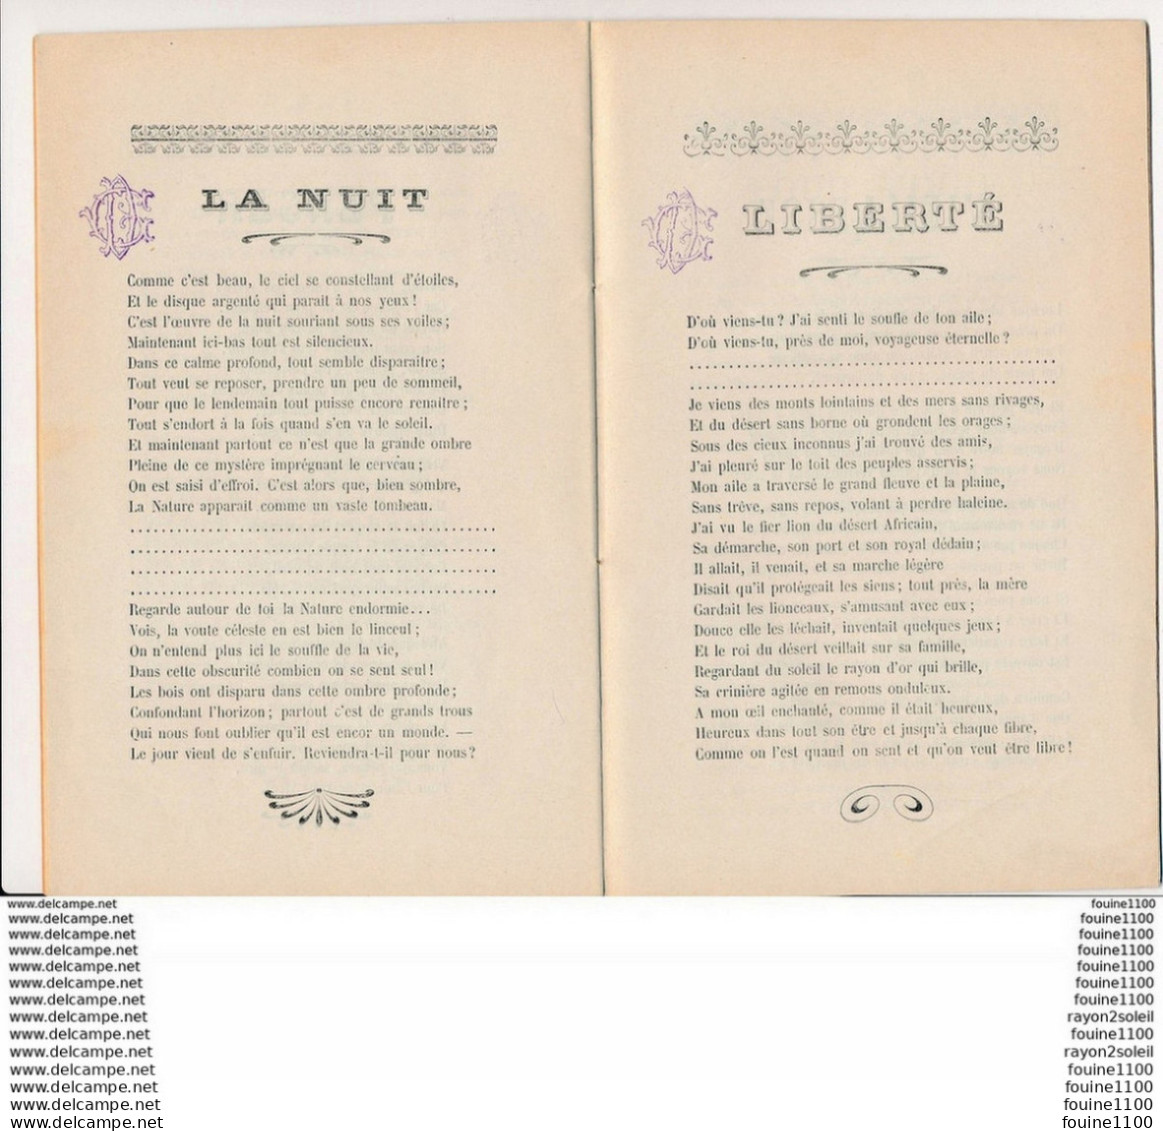 Fascicule  Vérités Poèmes Poesies De Léonce Mourier Avec Dédicace Autographe - Autores Franceses